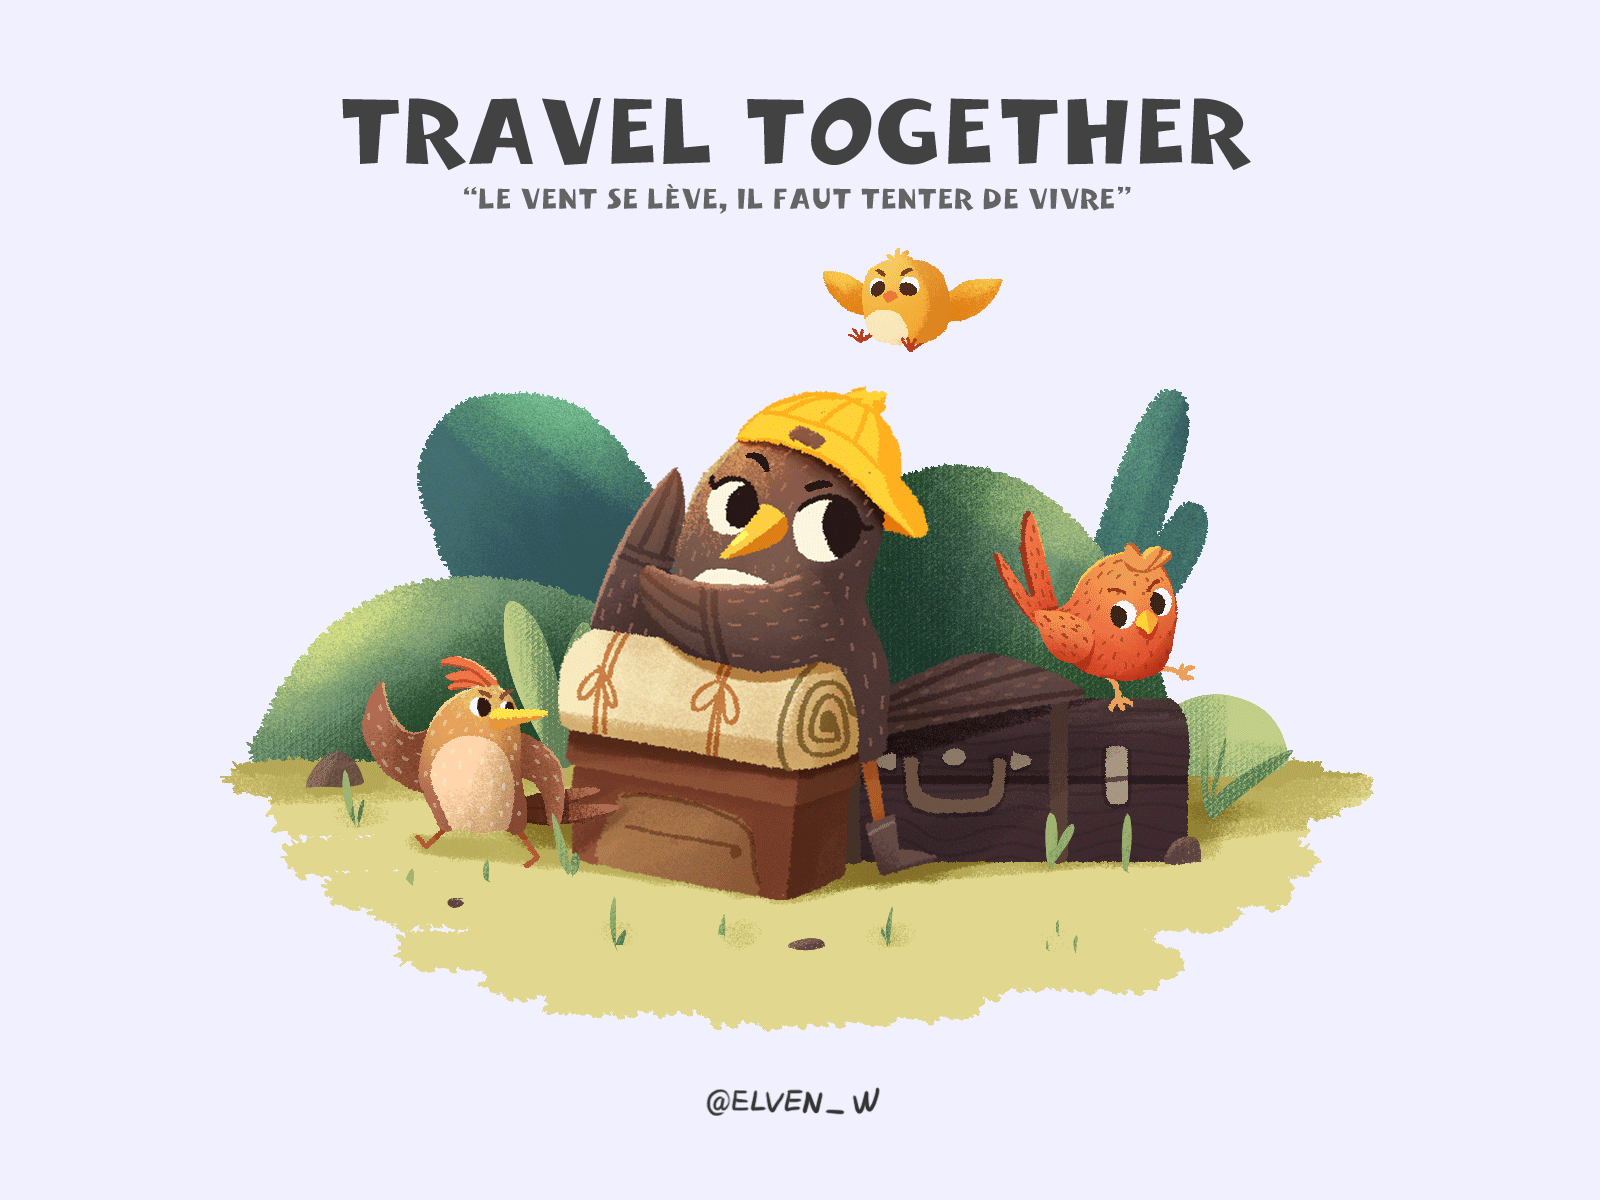 Travel Together animal illustration bird forest illustration travel